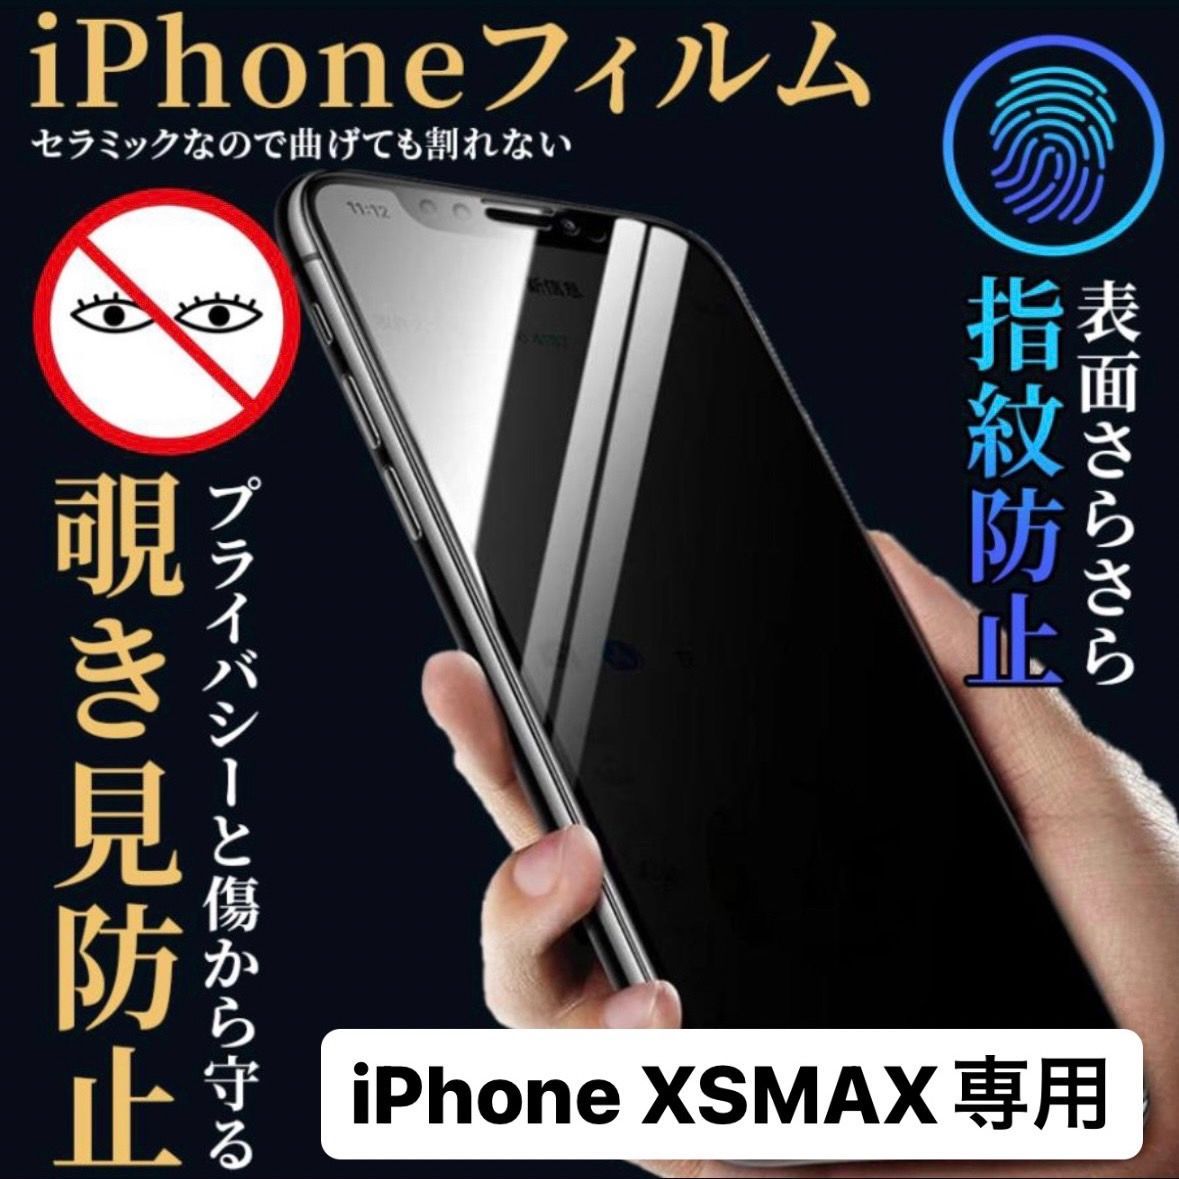 【品質極上】iPhonexsmax 画面割れ アイフォン iPhone スマートフォン本体